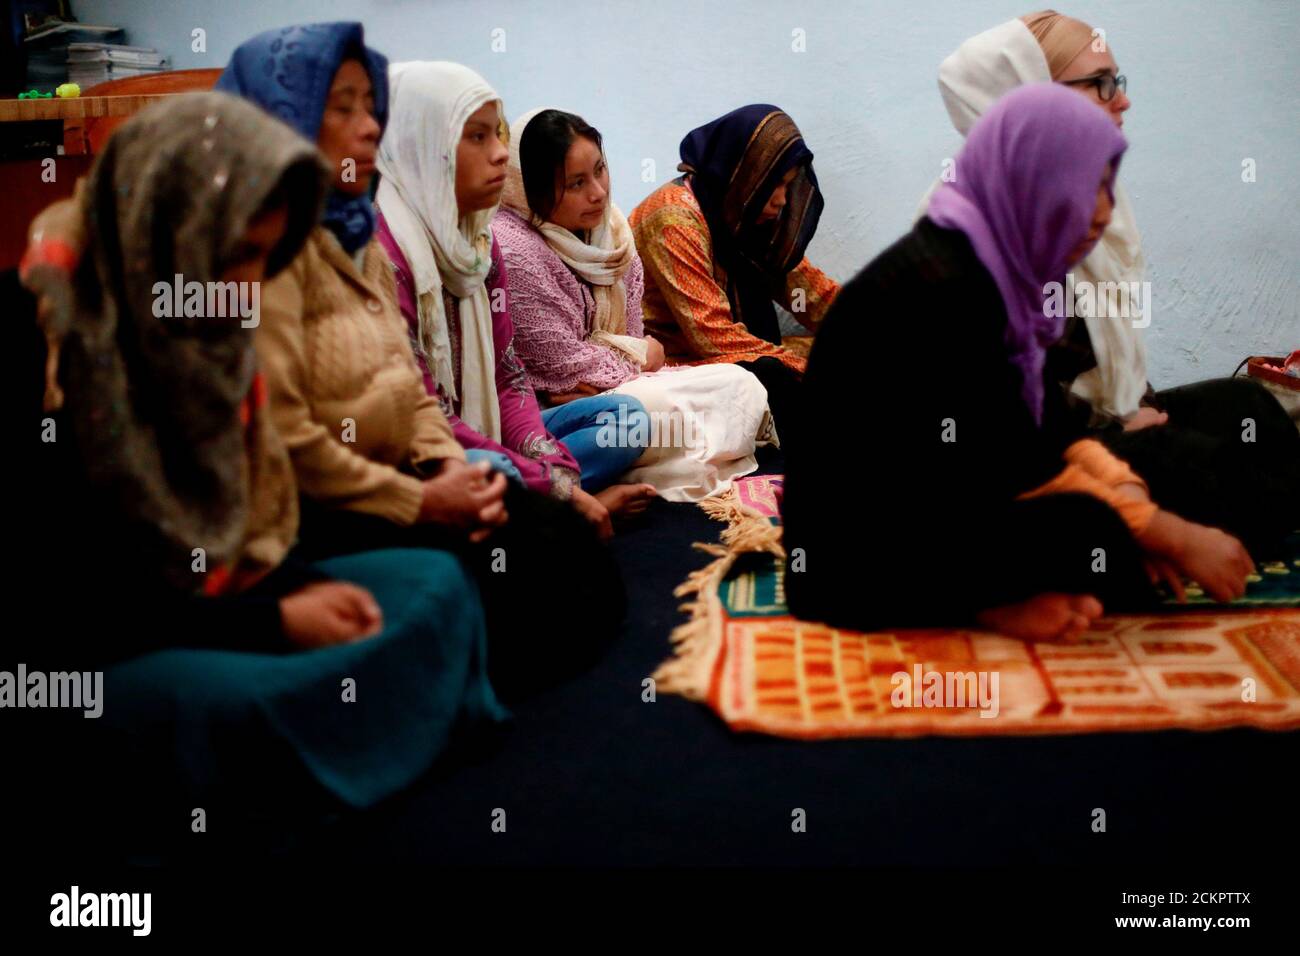 Les musulmans du groupe ethnique Tzotzil Maya participent aux prières du vendredi (Jummah), tout en portant des hijabs faits de châles maya traditionnels, à l'intérieur de la mosquée de la communauté musulmane Ahmadiyya à San Cristobal de las Casas, dans l'État du Chiapas, au Mexique, le 11 août 2017. REUTERS/EDGARD GARRIDO RECHERCHE 'TZOTZIL MAYA' POUR CETTE HISTOIRE. RECHERCHEZ « IMAGE PLUS LARGE » POUR TOUTES LES HISTOIRES. Banque D'Images